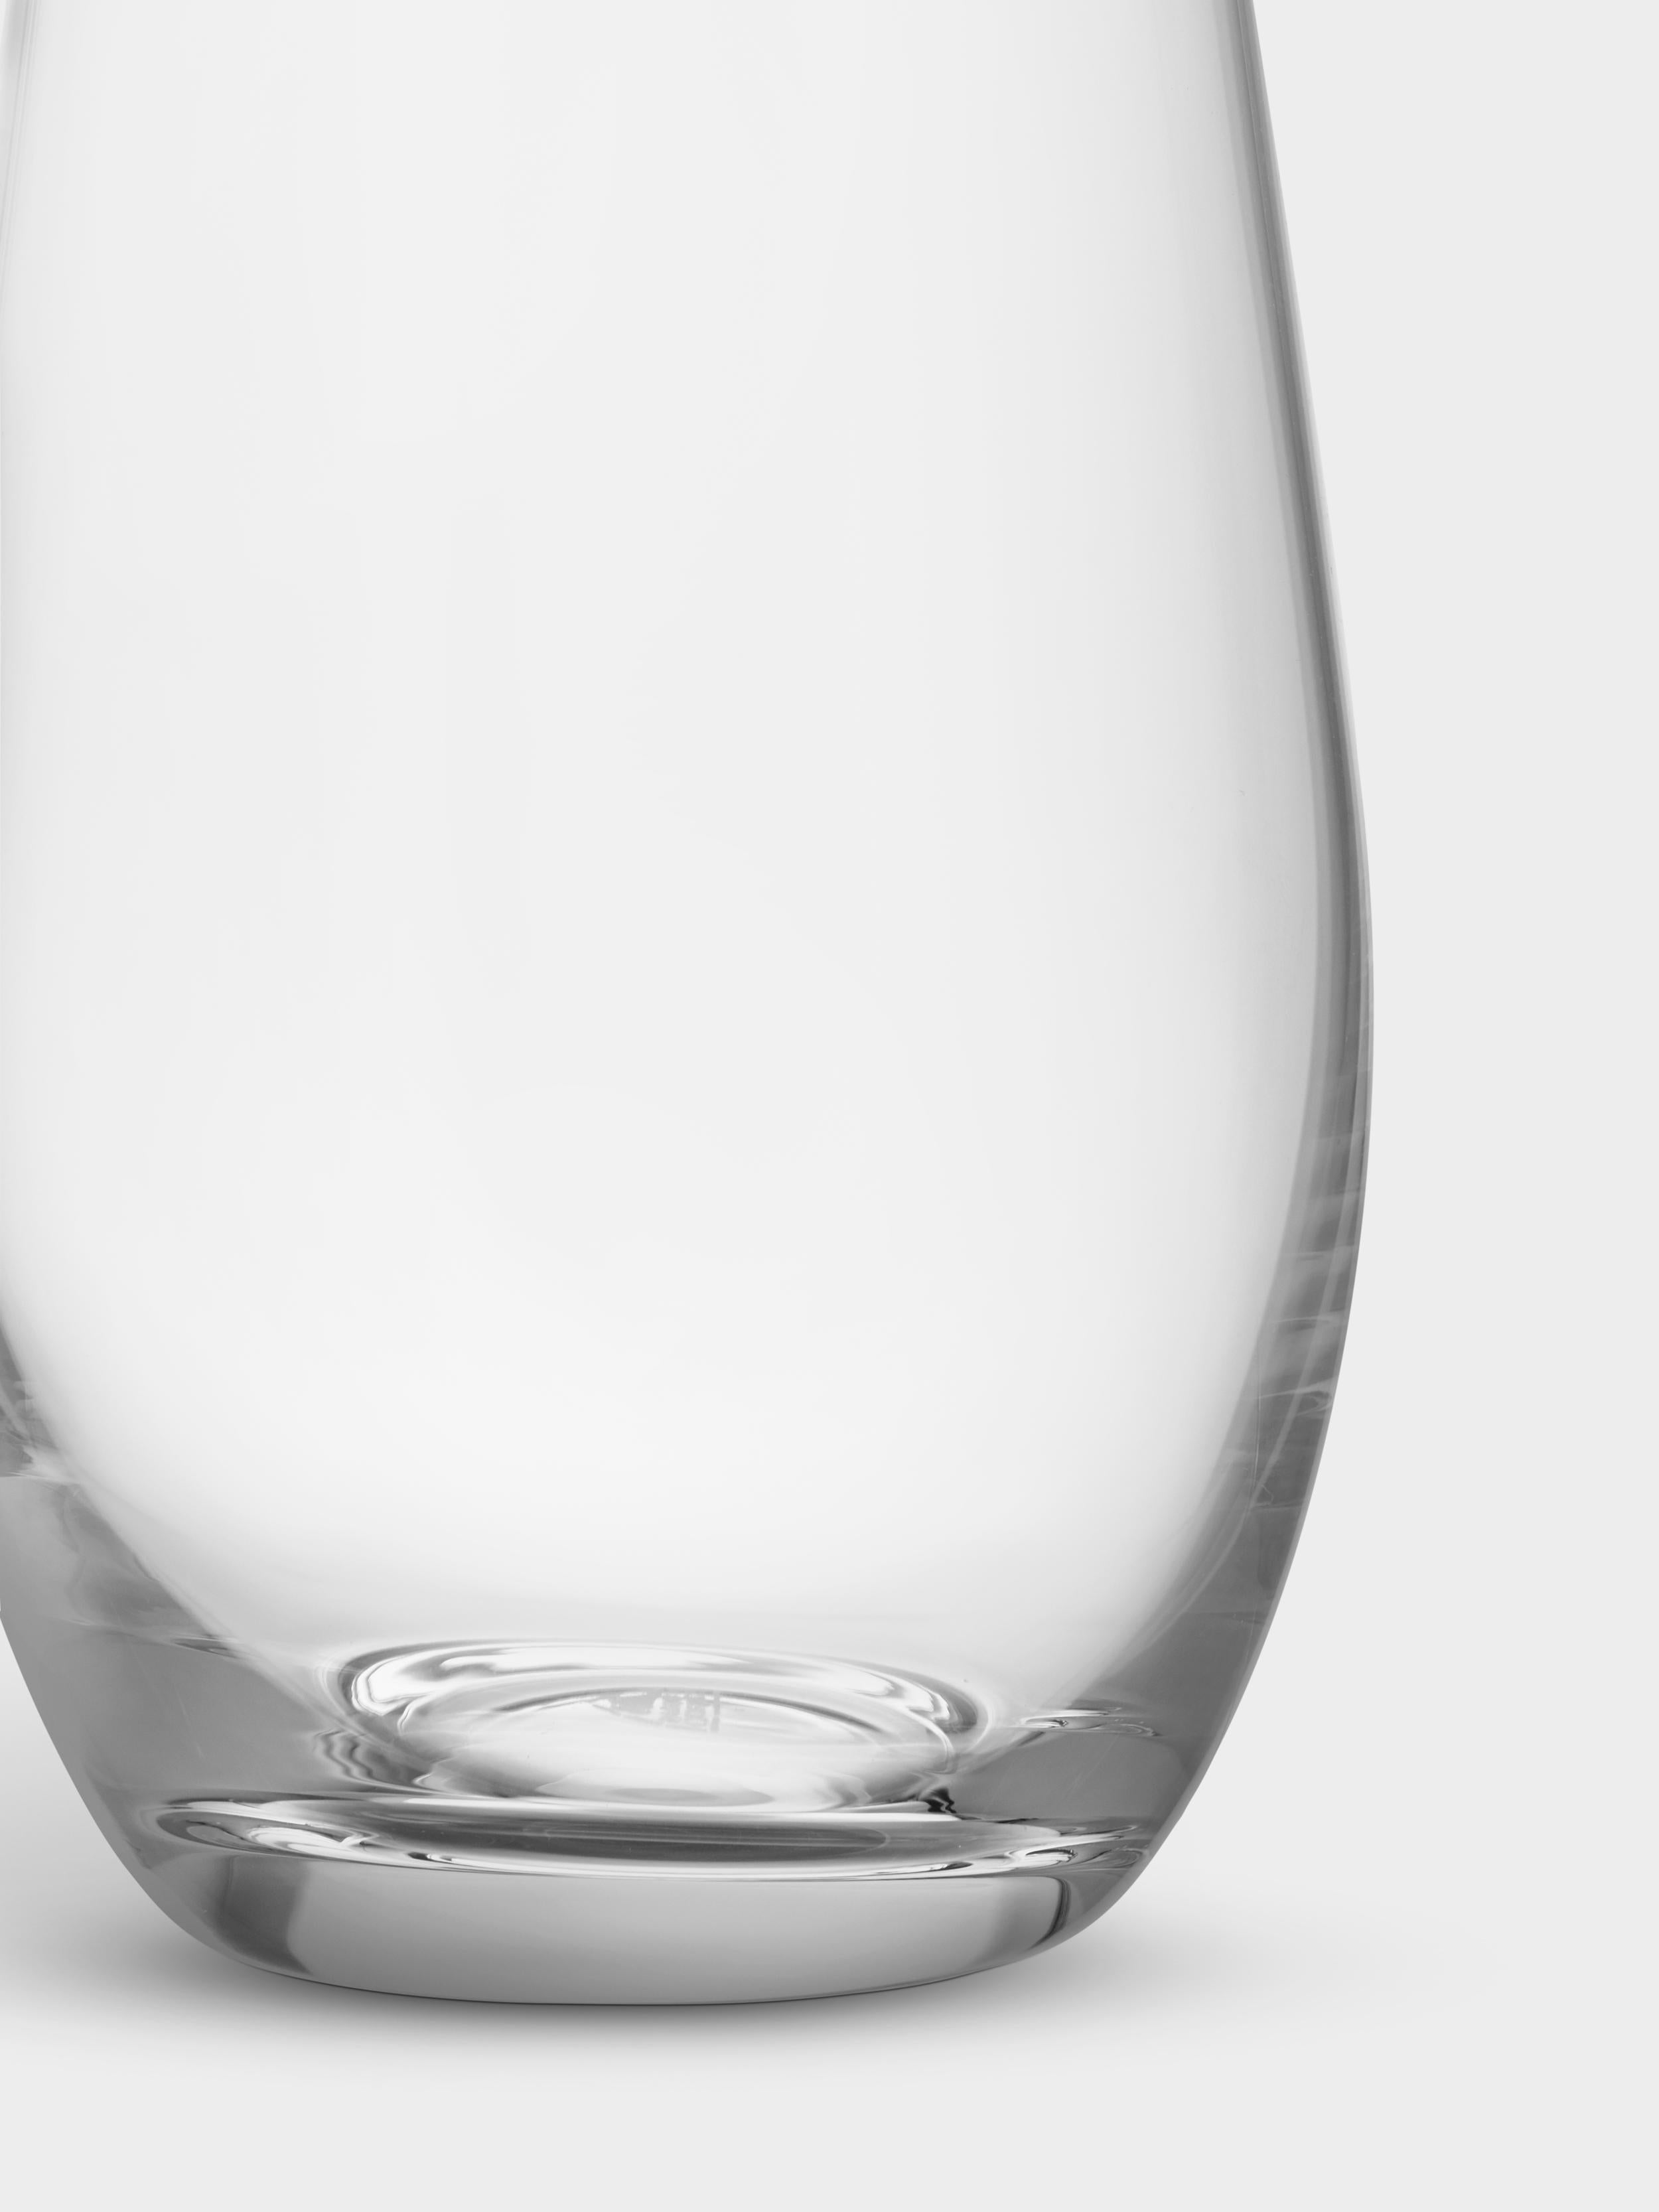 La carafe Enjoy d'Orrefors, d'une contenance de 27 oz, présente un design allongé et droit qui la rend idéale pour servir du vin, de l'eau et d'autres boissons non alcoolisées. Il peut également être décoratif et fonctionnel en tant que vase. Conçu